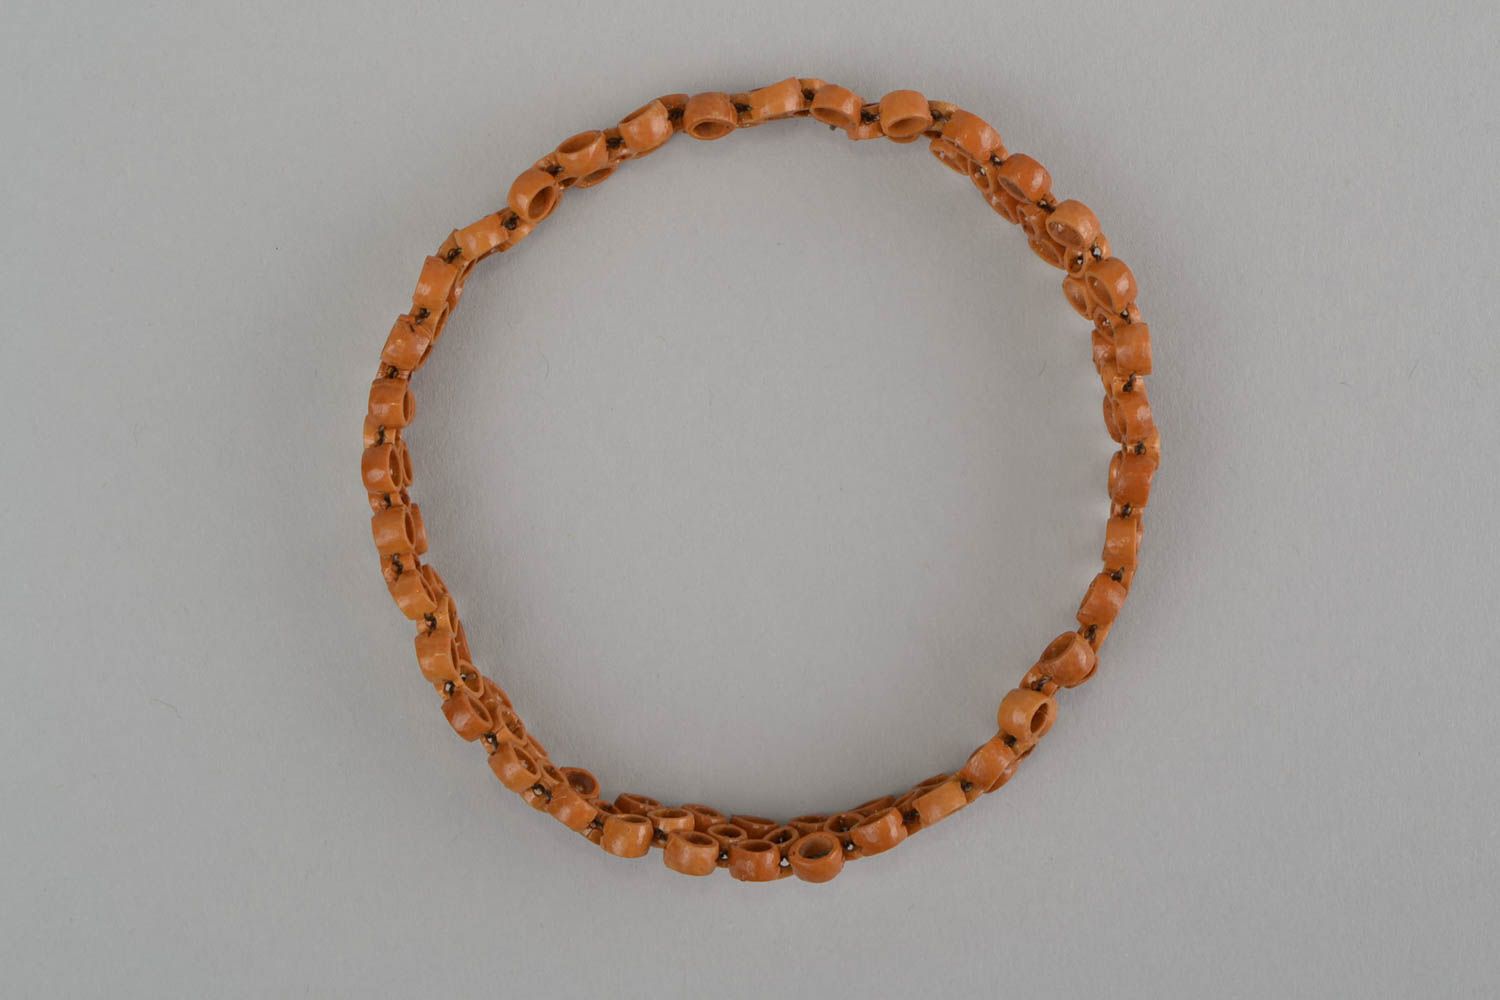 Оригинальный браслет из фруктовых косточек ручной работы в эко стиле для девушек фото 6